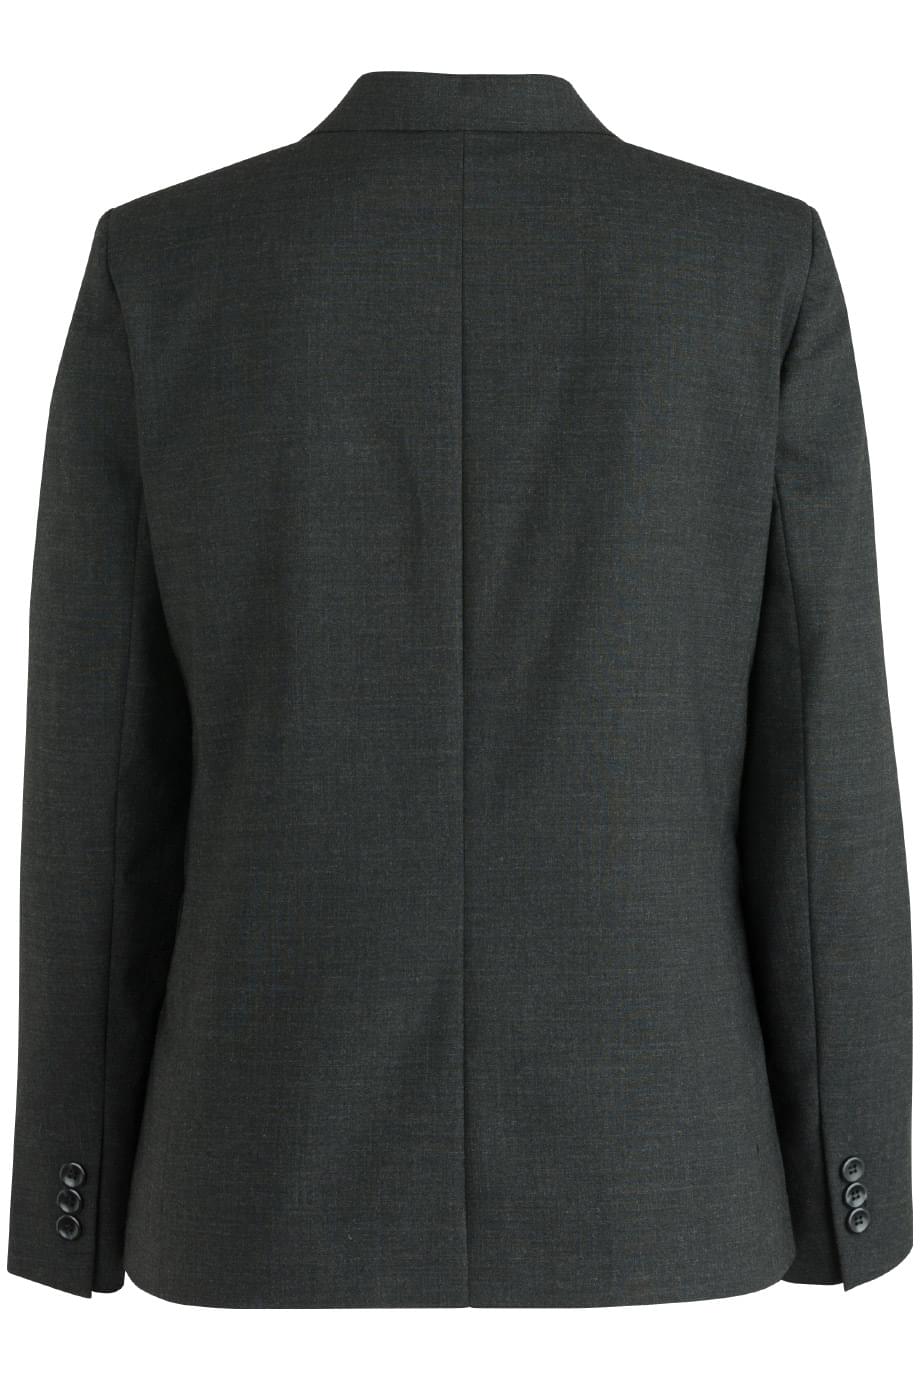 SIGNATURE SUIT COAT | Edwards Garment